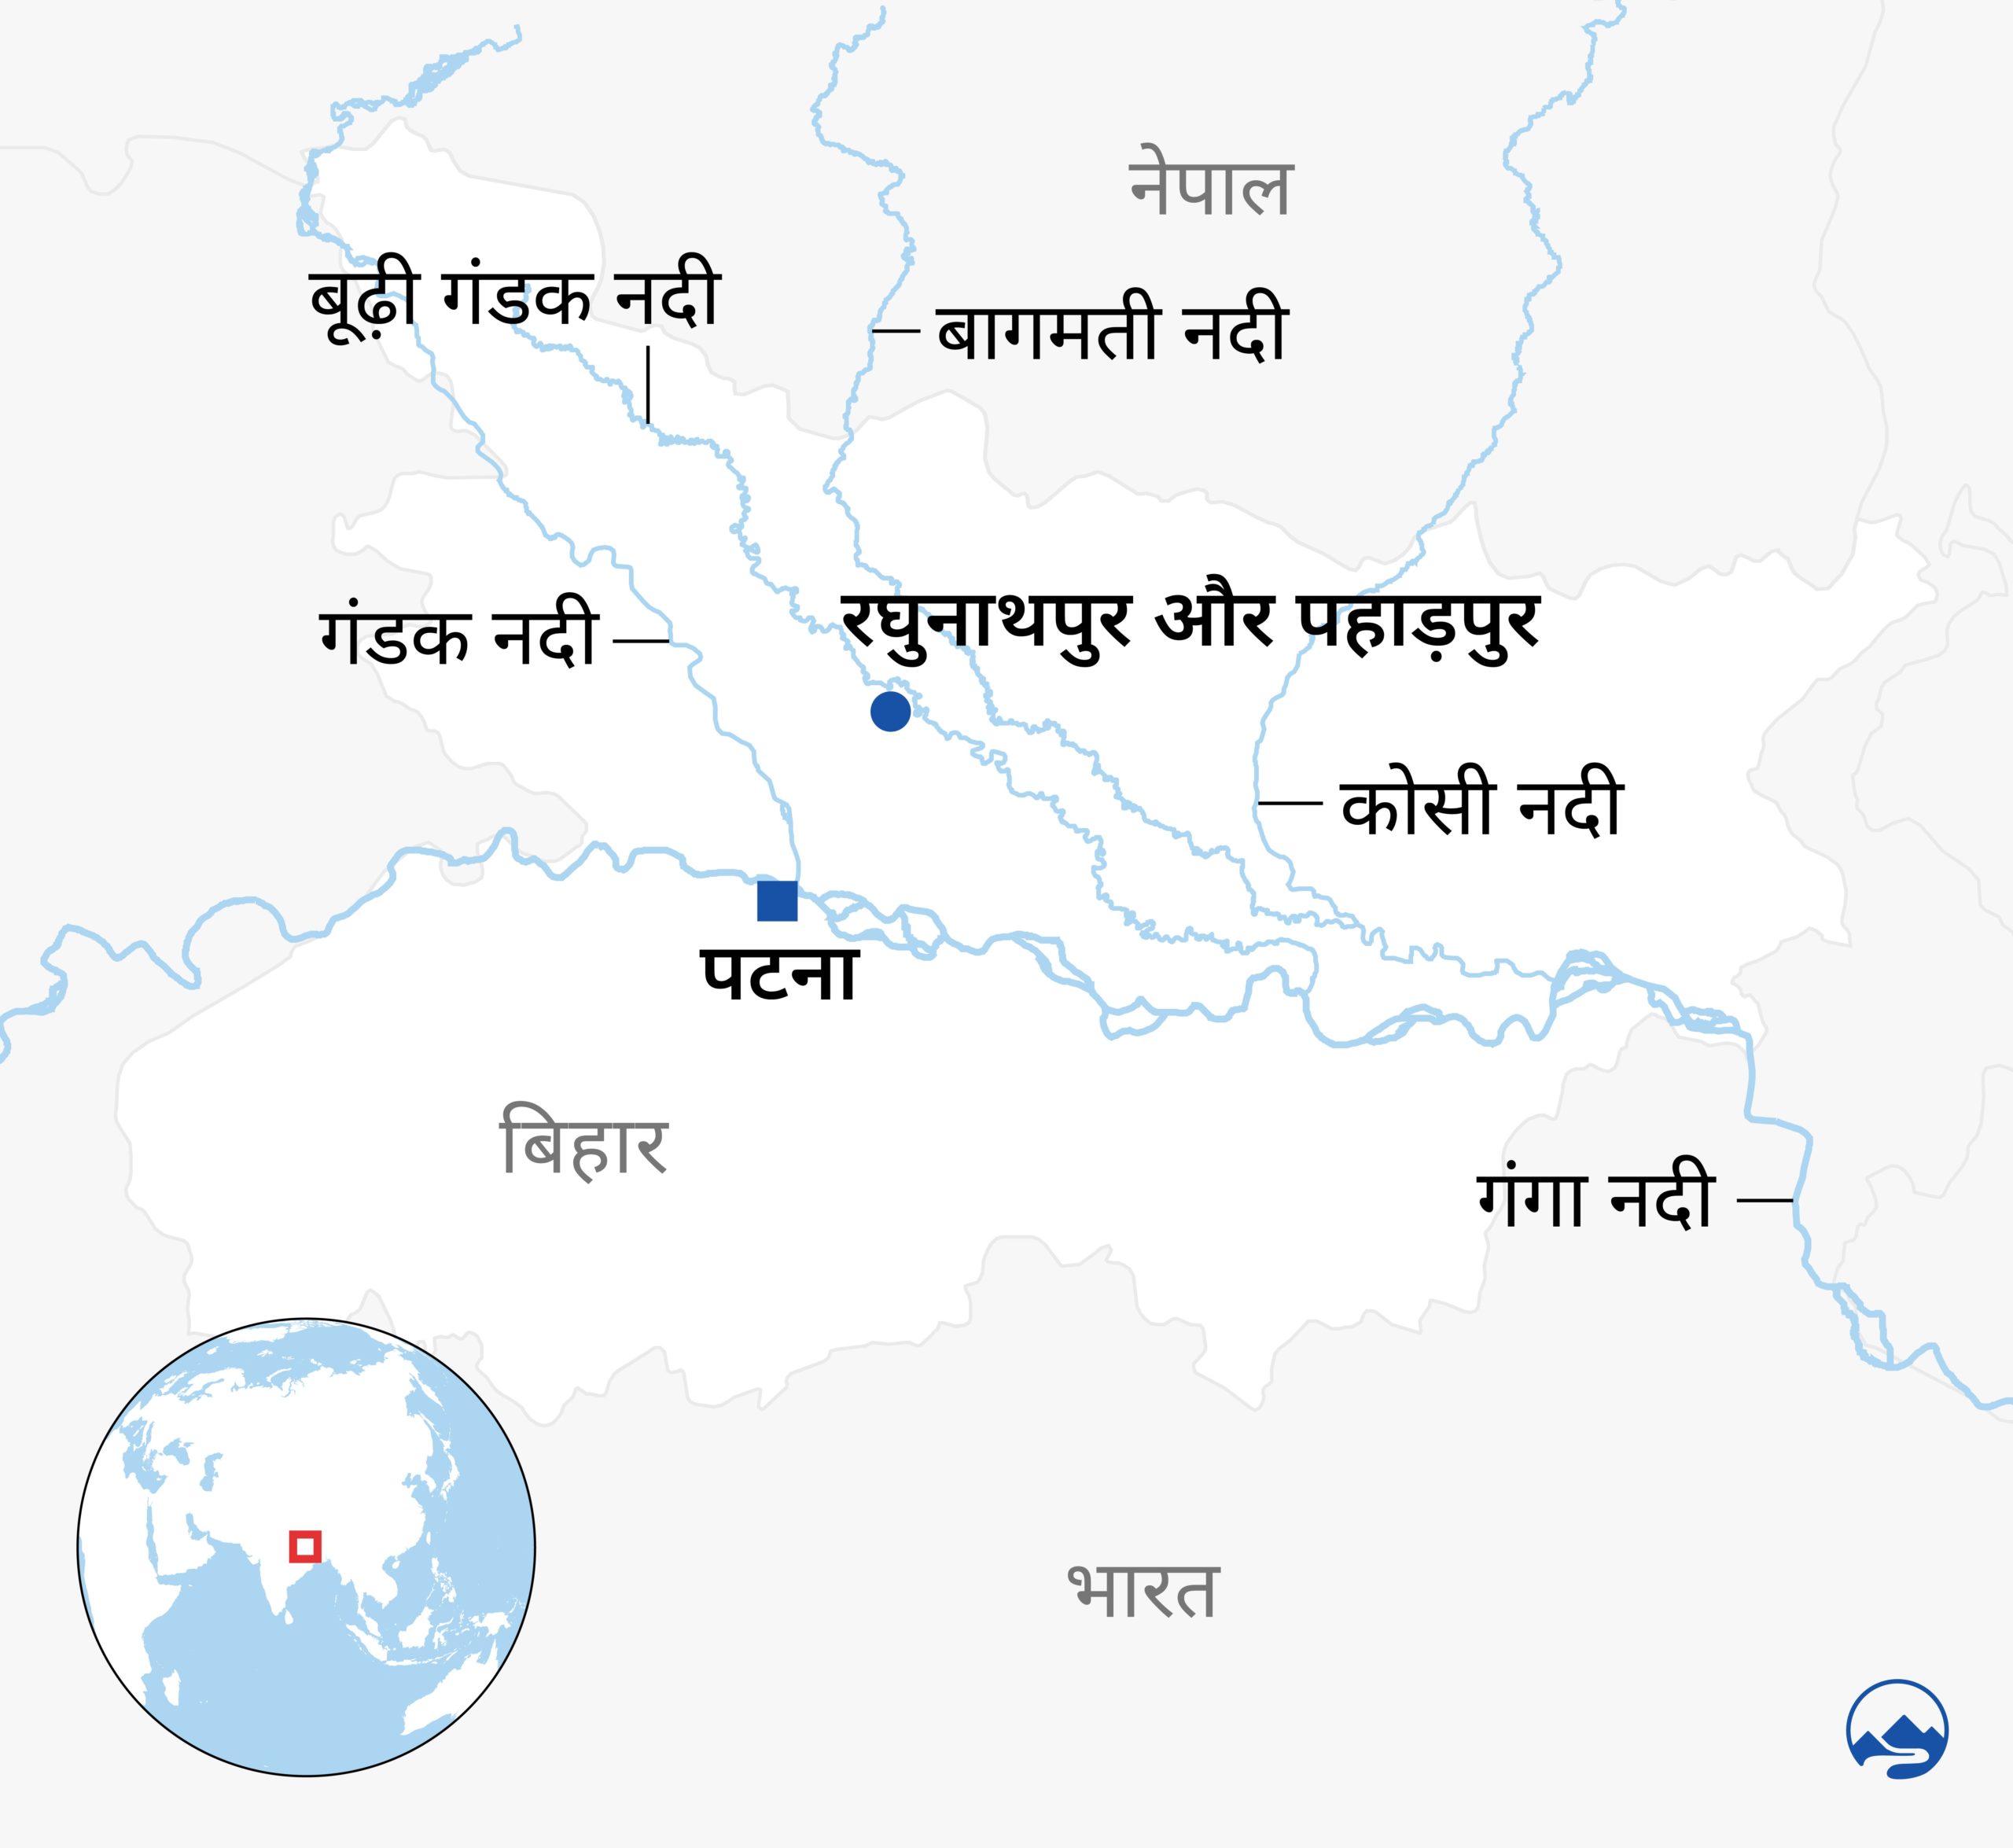 Bihar rivers